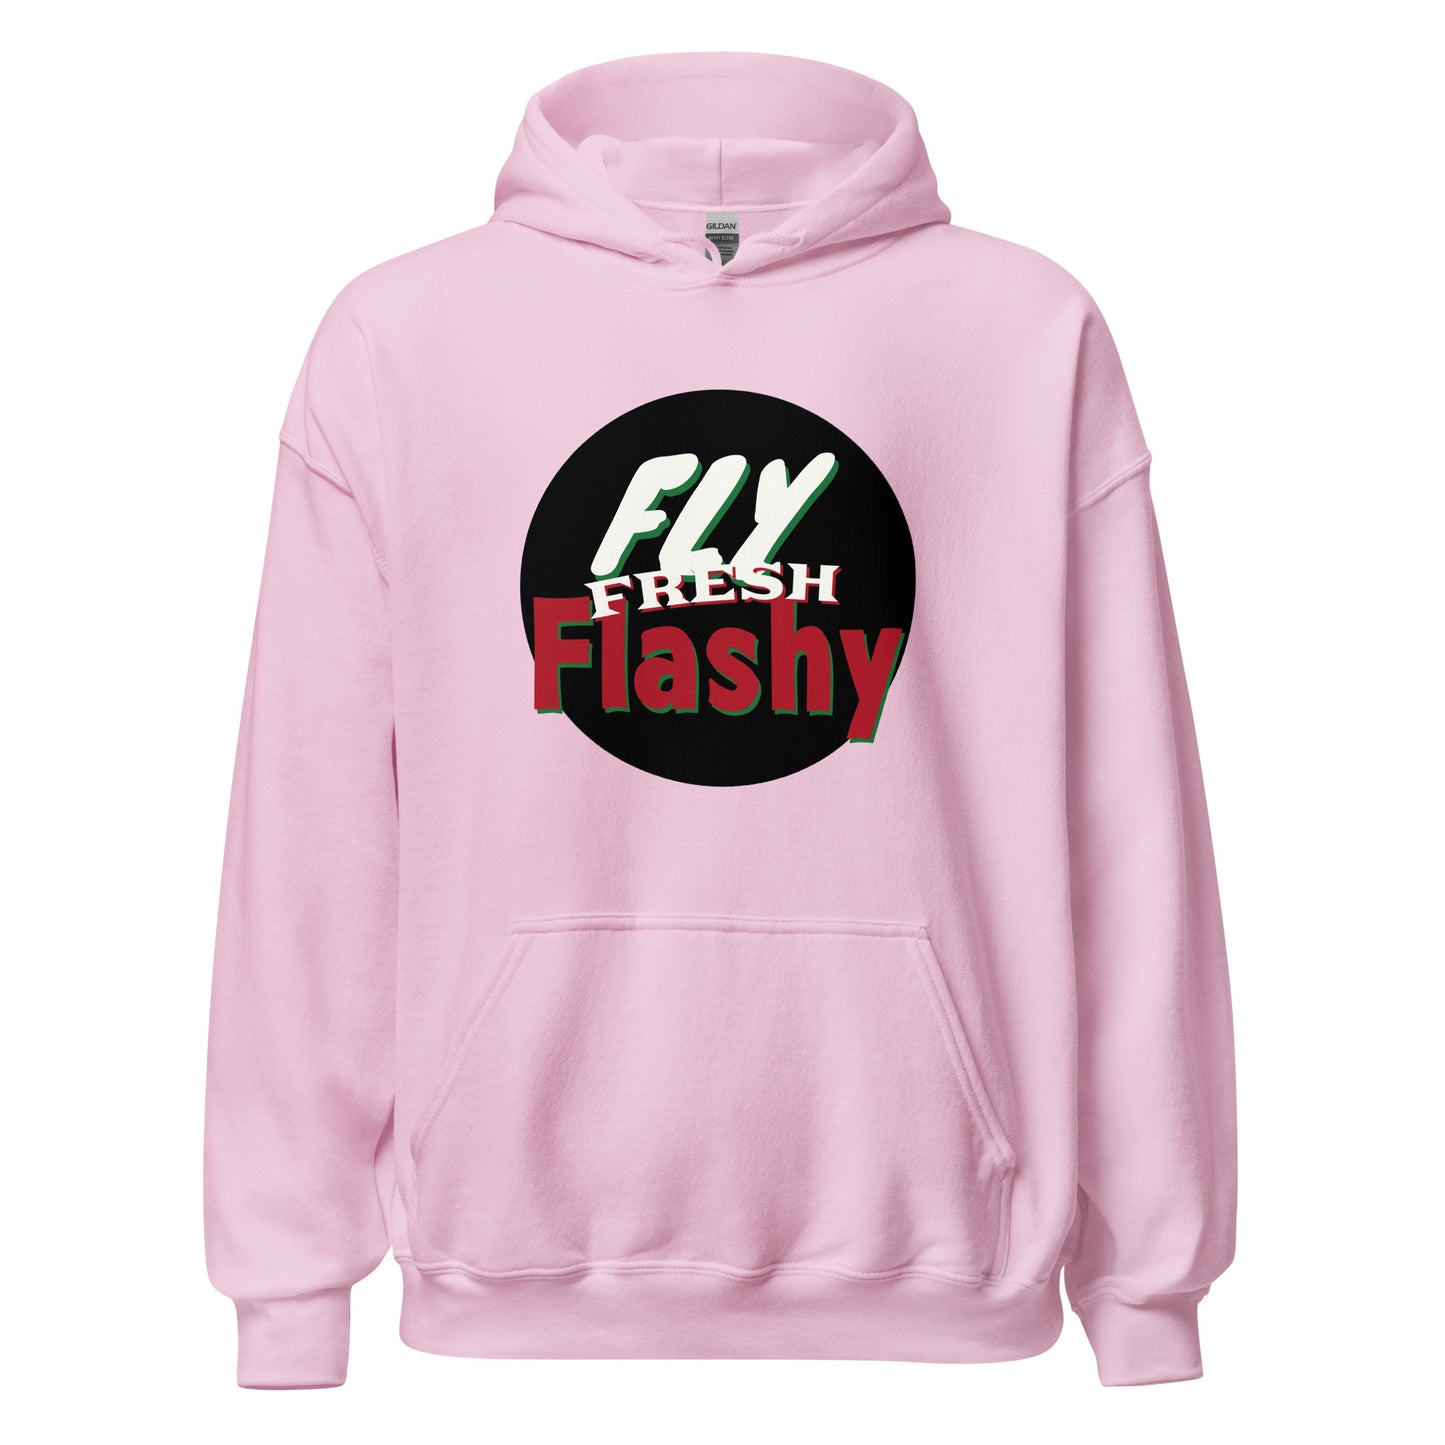 Fly Fresh Flashy Unisex Hoodie by Amagiri Young